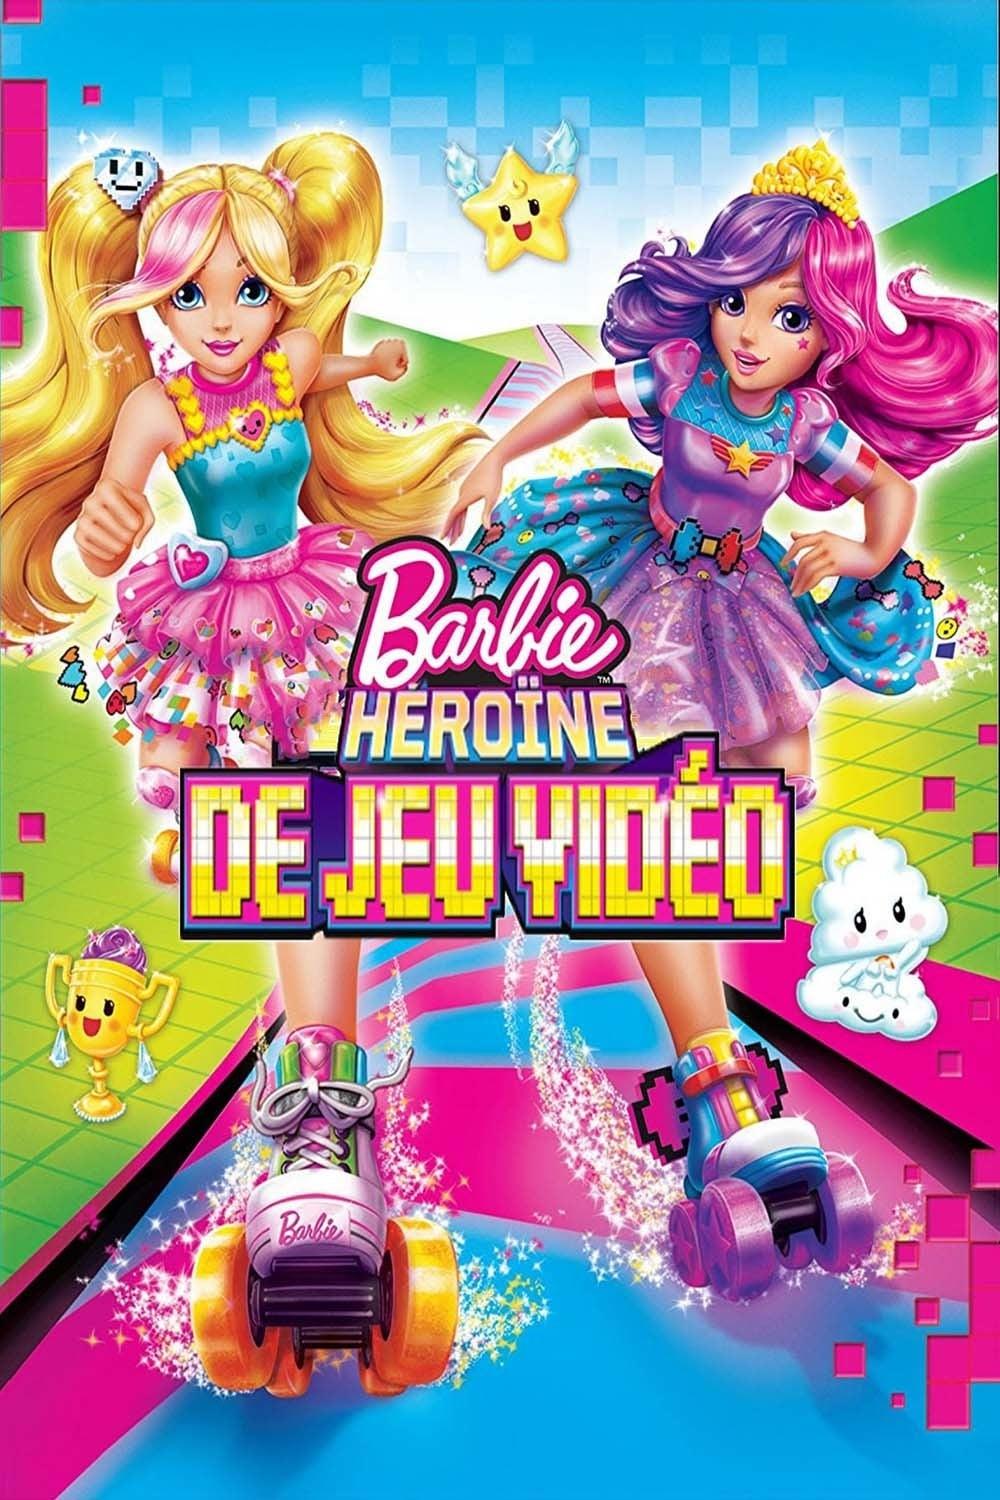 Barbie : Héroïne de jeu vidéo est-il disponible sur Netflix ou autre ?